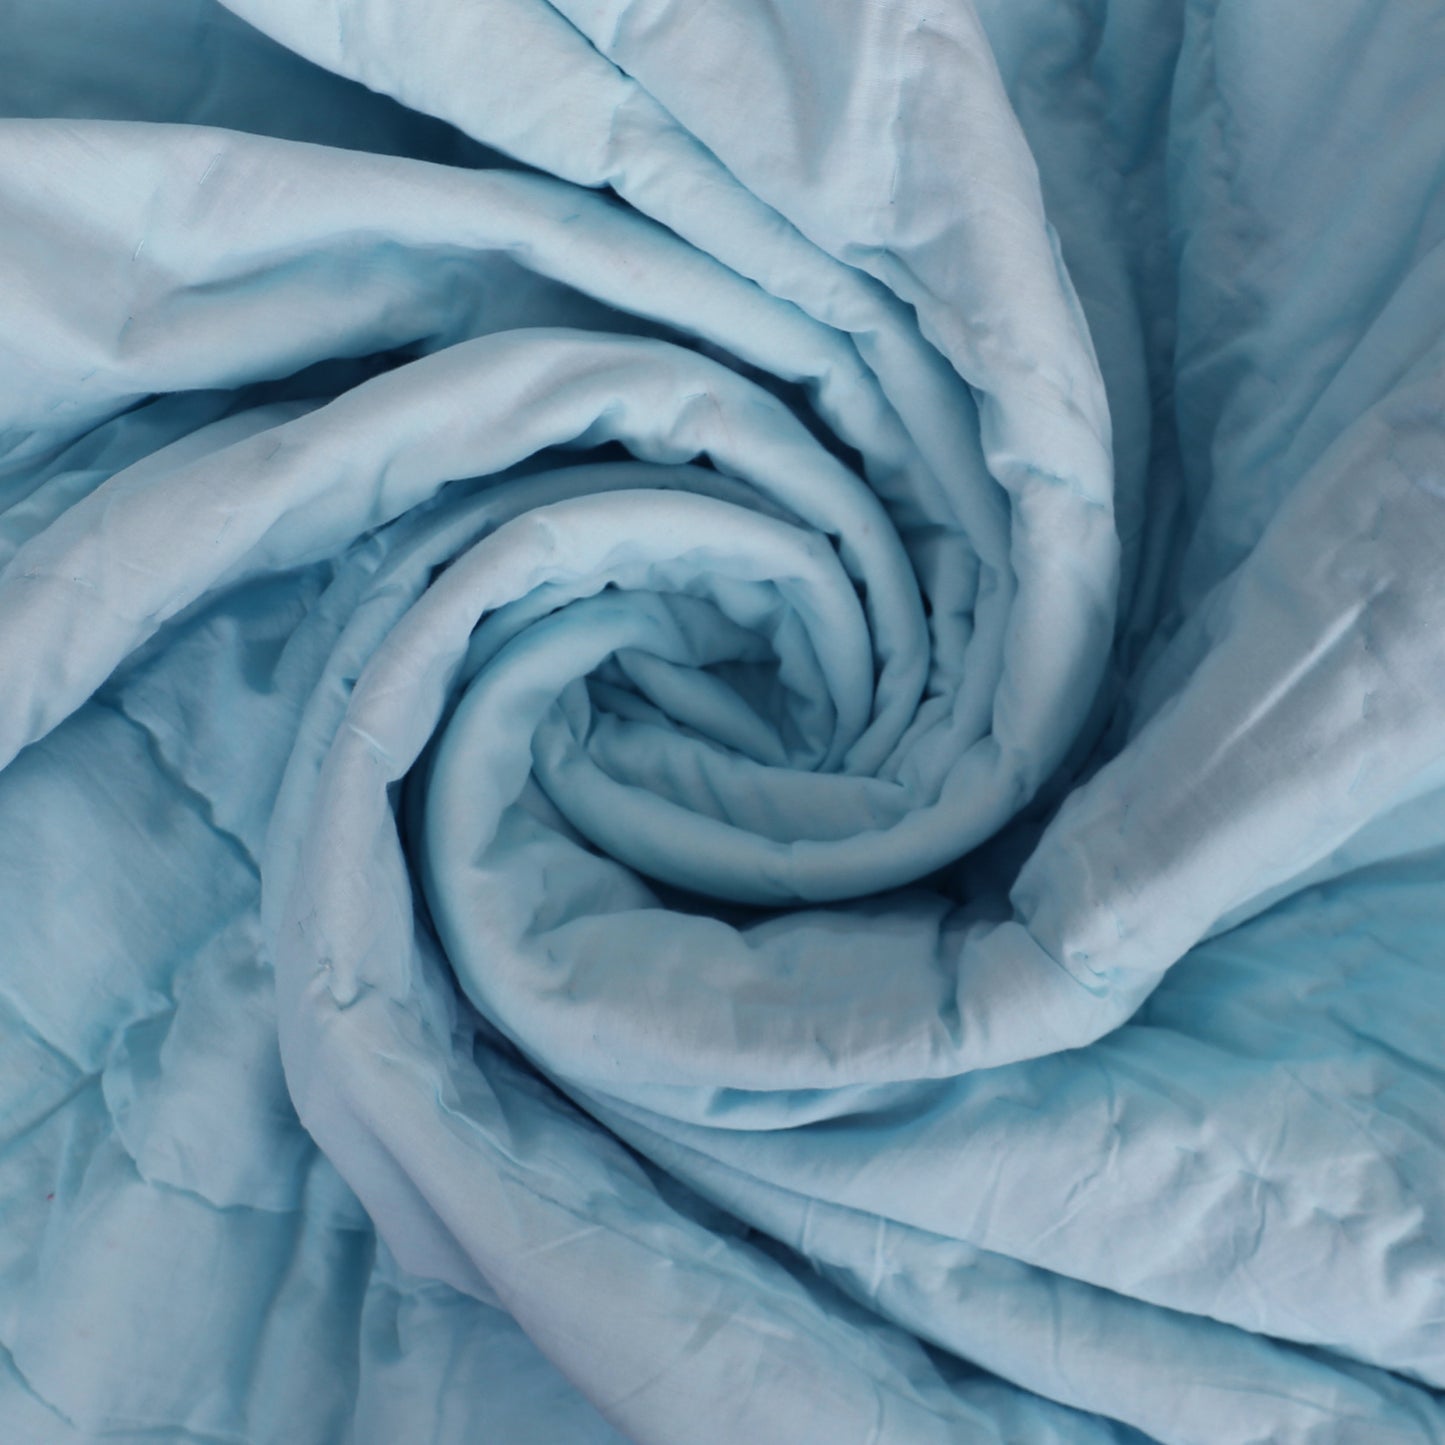 Solid Blue Super Soft Reversible Quilt/Comforter